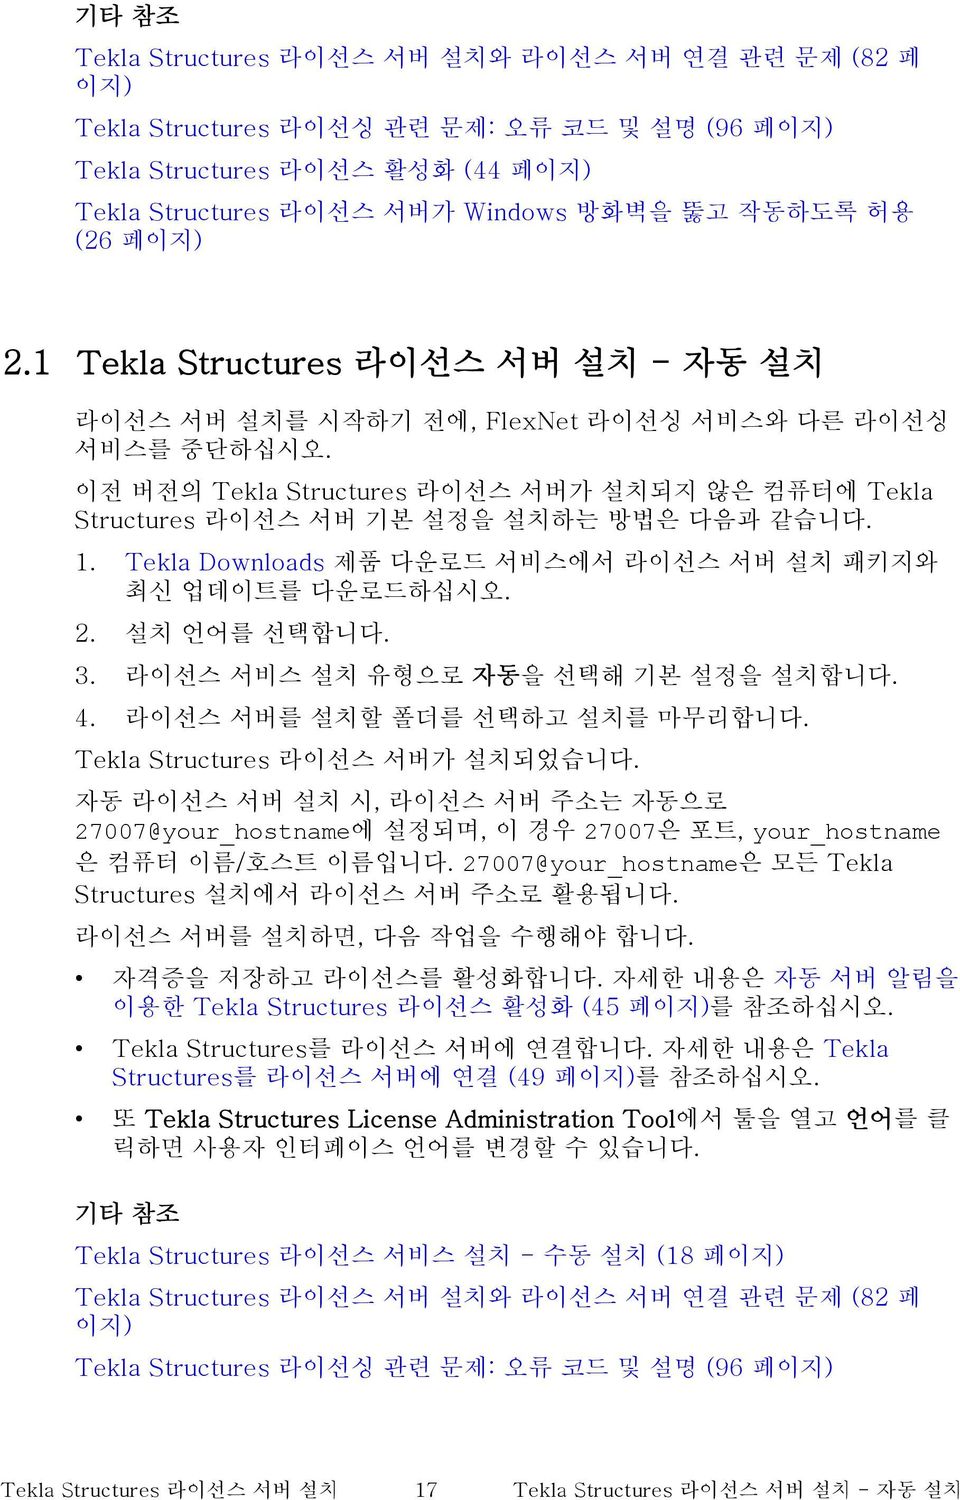 이전 버전의 Tekla Structures 라이선스 서버가 설치되지 않은 컴퓨터에 Tekla Structures 라이선스 서버 기본 설정을 설치하는 방법은 다음과 같습니다. 1. Tekla Downloads 제품 다운로드 서비스에서 라이선스 서버 설치 패키지와 최신 업데이트를 다운로드하십시오. 2. 설치 언어를 선택합니다. 3.